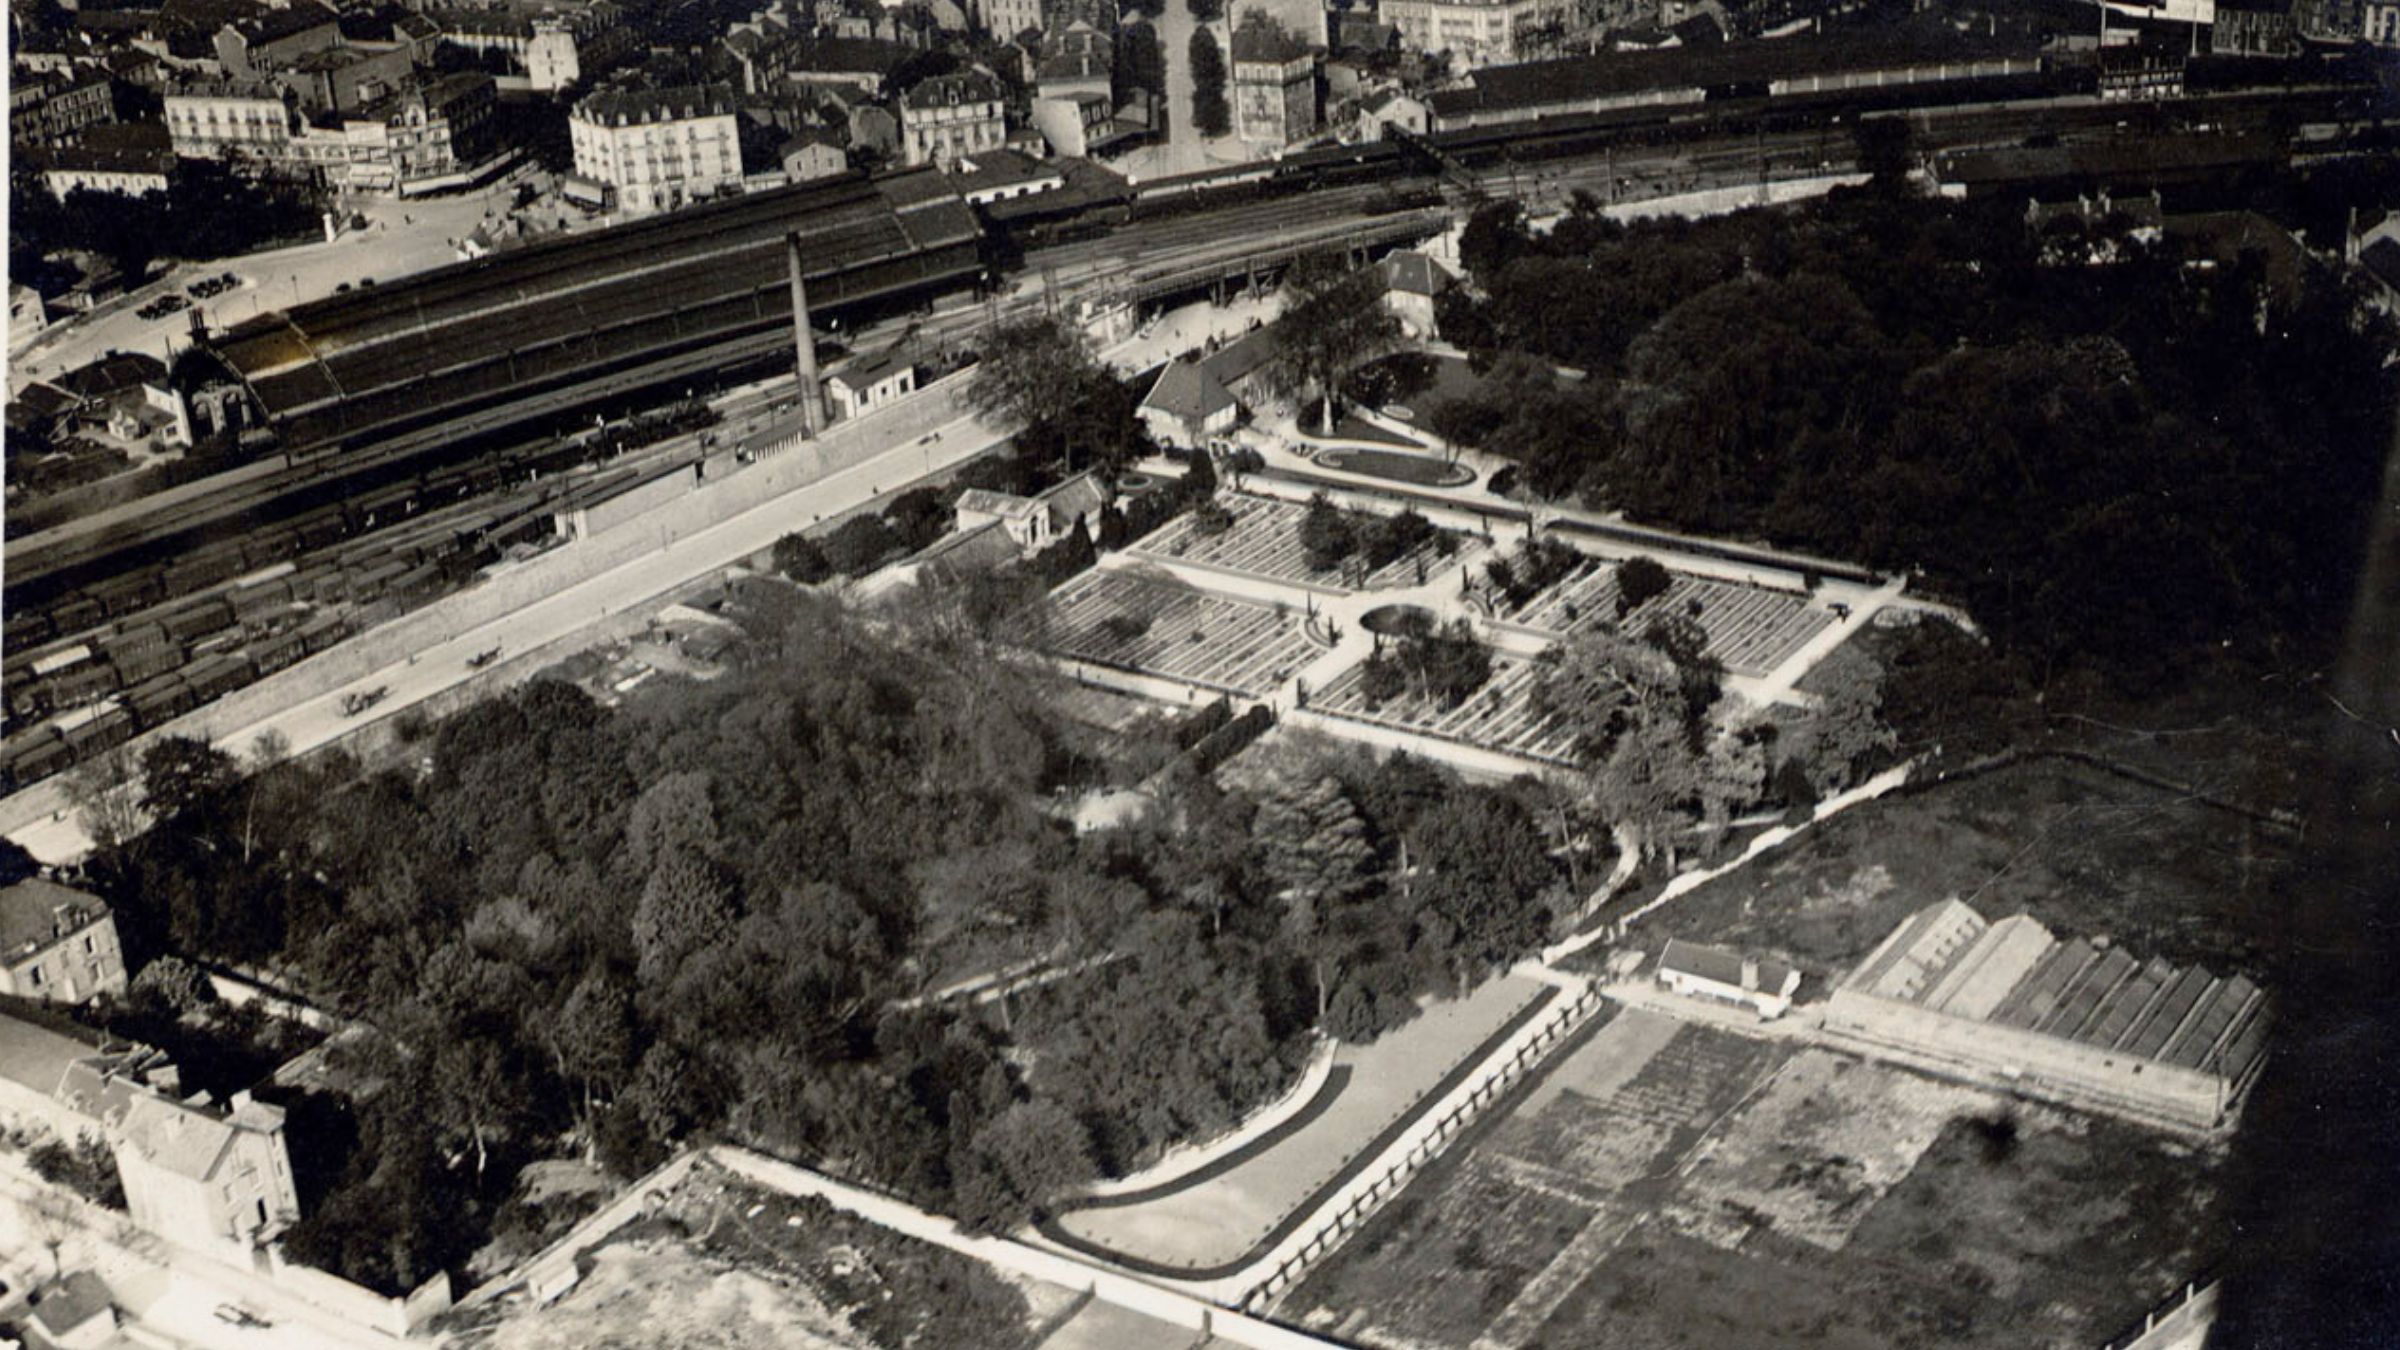 Le jardin de l'Arquebuse - Dijon à travers le temps